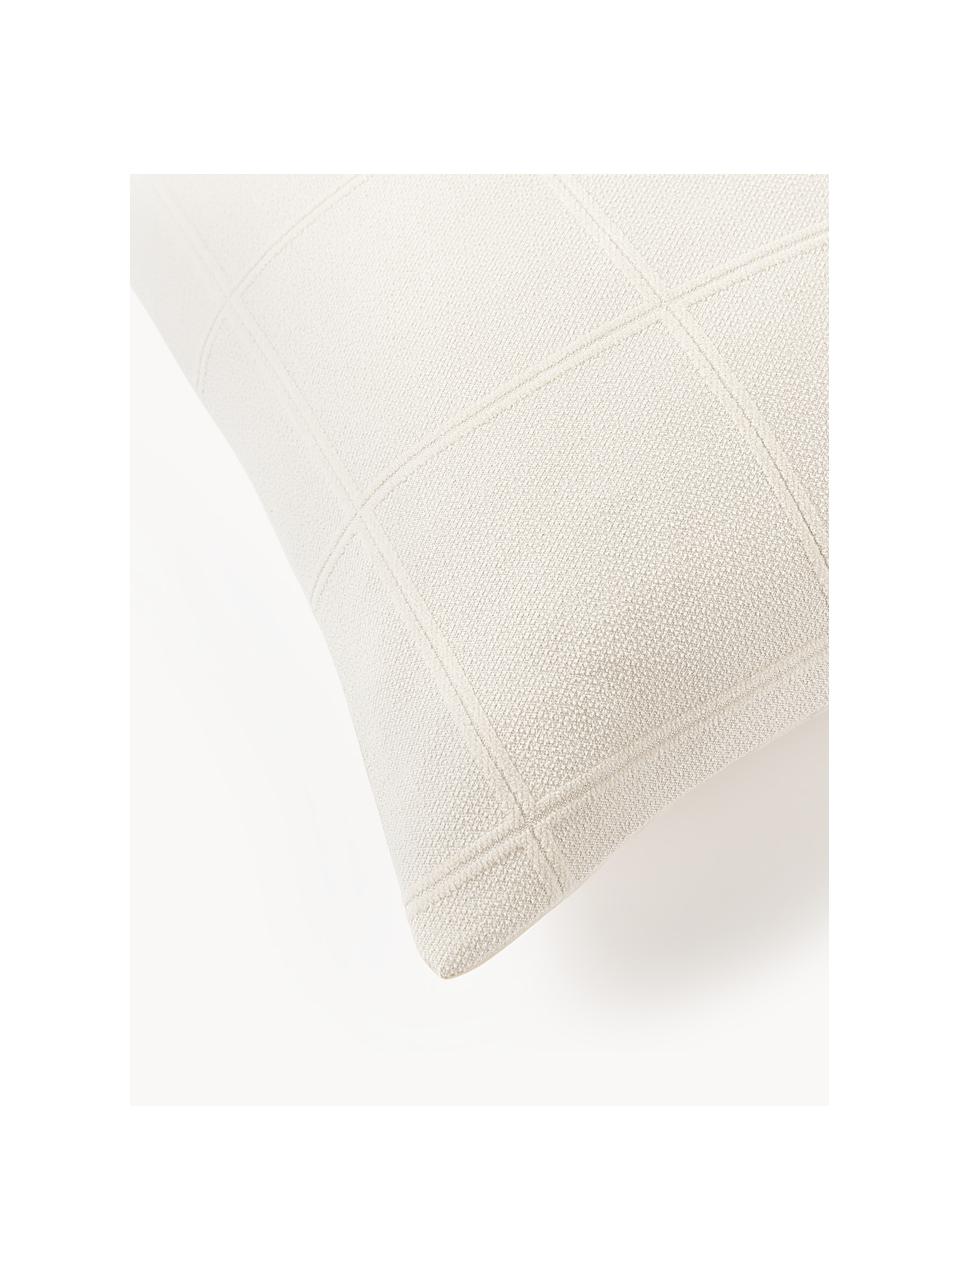 Kopfkissenbezug Vivienne mit getuftetem Karo-Muster, Vorderseite: Off White
Rückseite: Cremeweiss, B 40 x L 80 cm